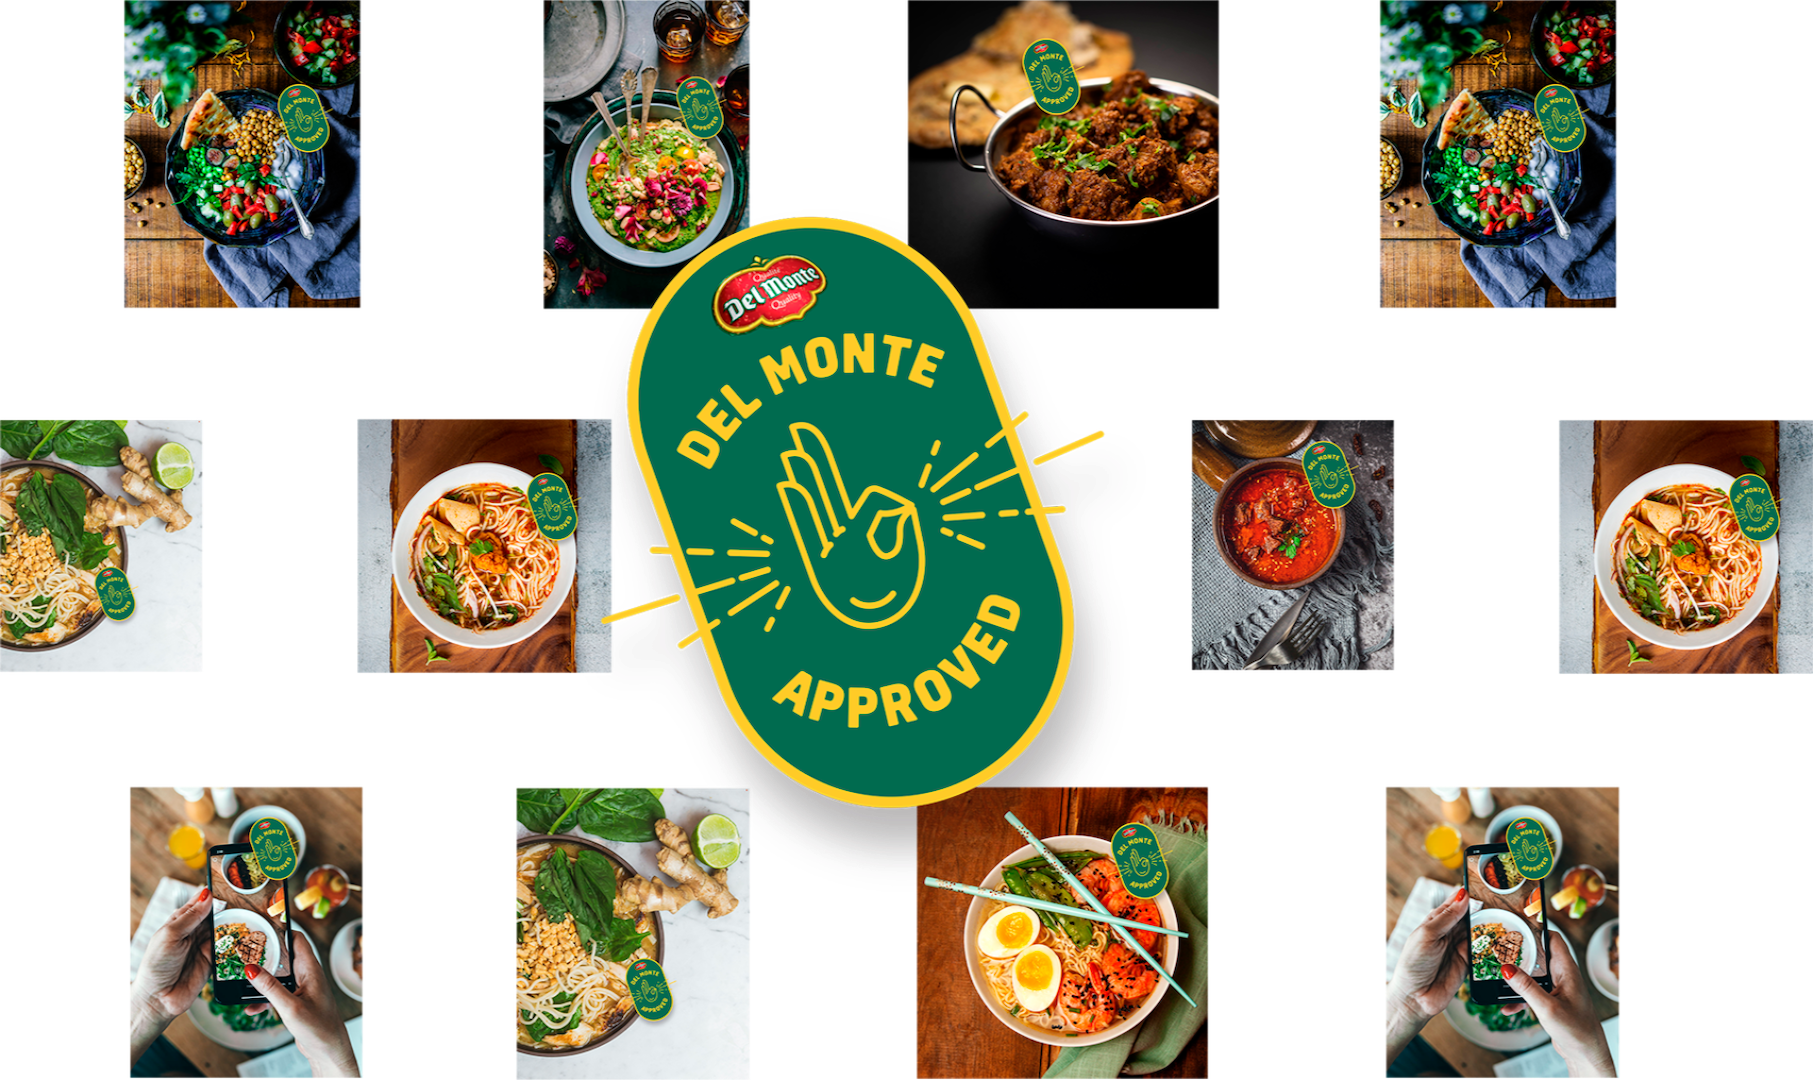 Repas délicieux approuvés par Del Monte